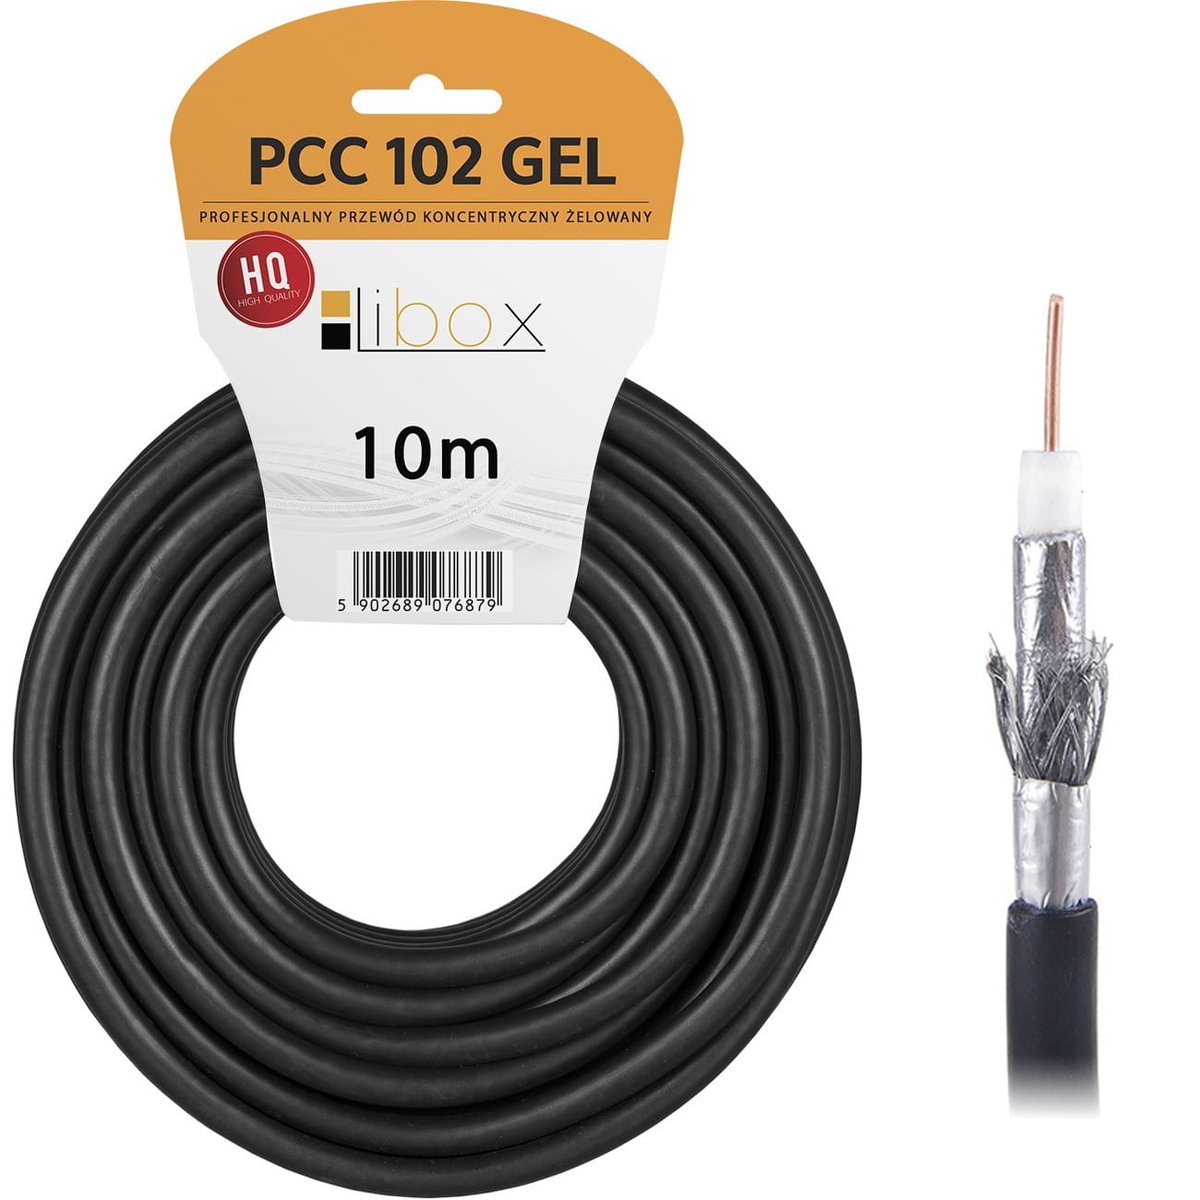 Kabel koncentryczny żelowany RG6U PCC102GEL-10 10m